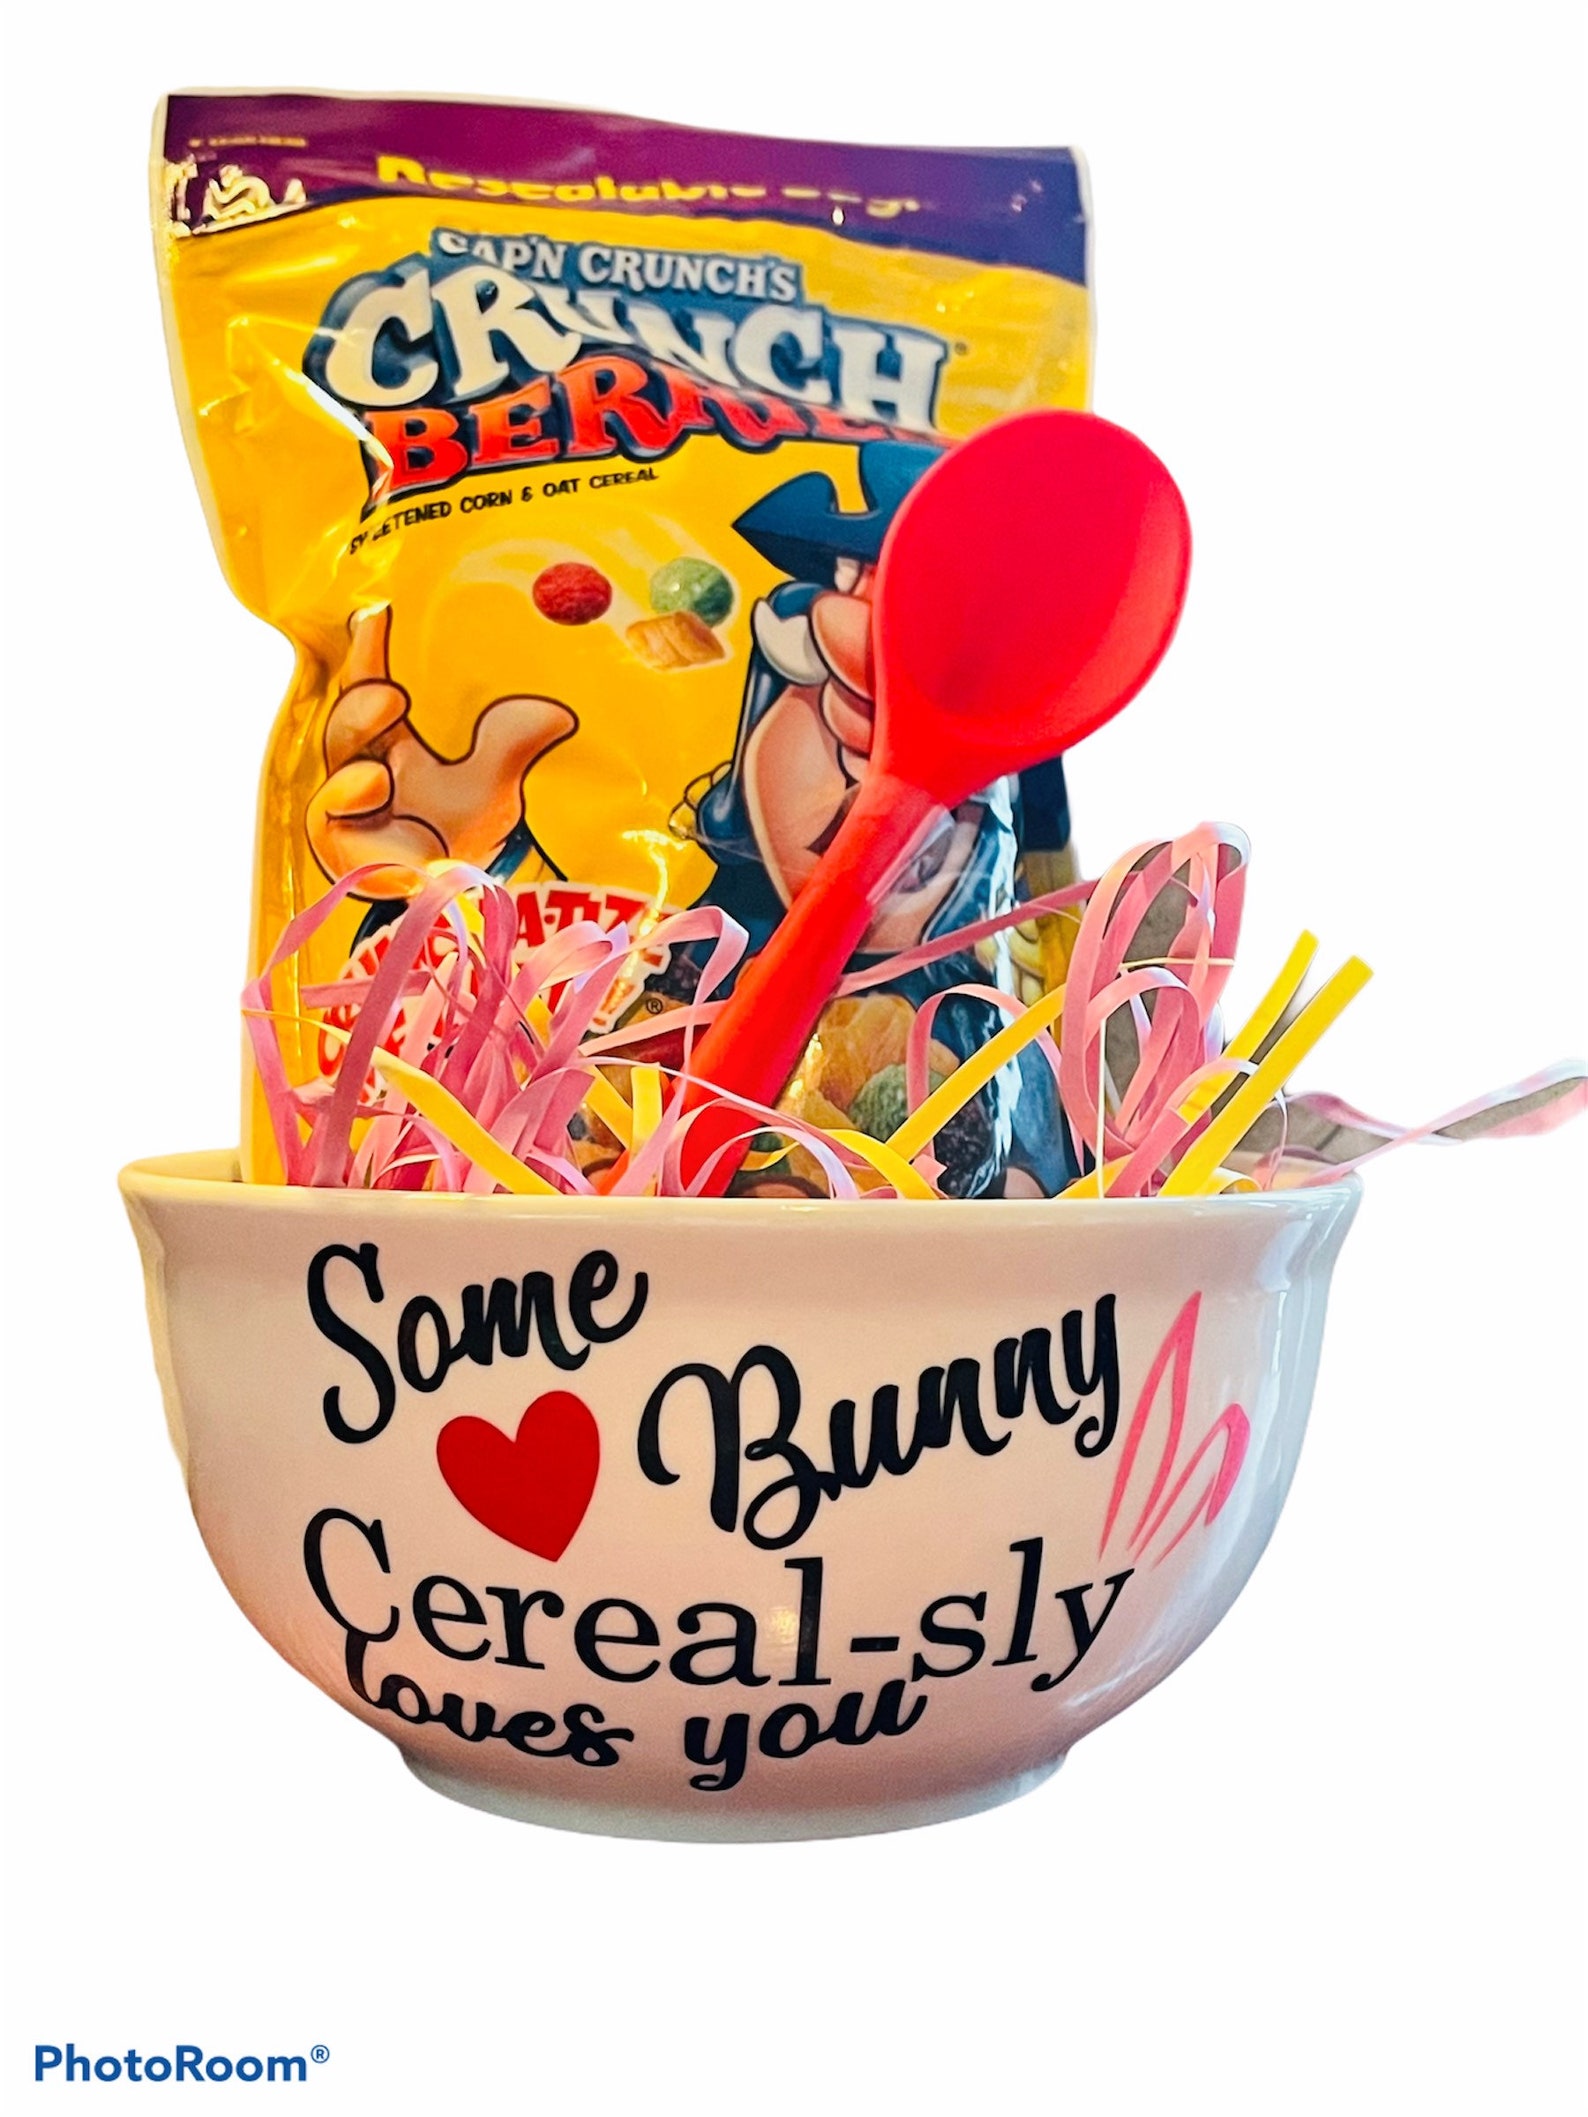 Easter cereal bowls gift sets | Etsy